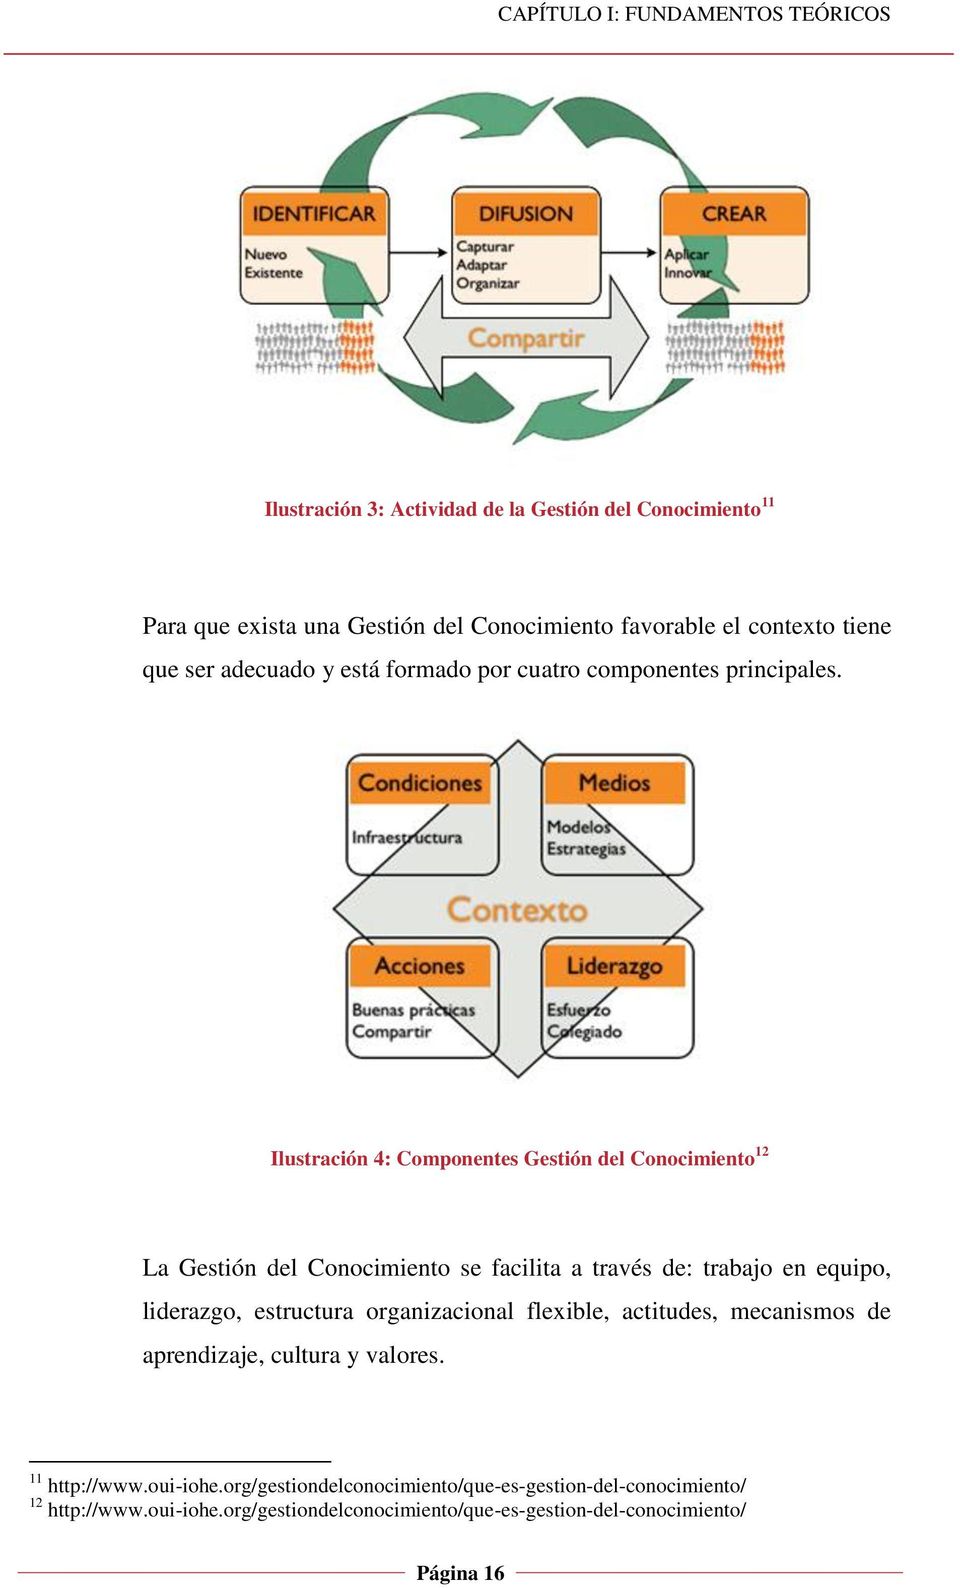 Ilustración 4: Componentes Gestión del Conocimiento 12 La Gestión del Conocimiento se facilita a través de: trabajo en equipo, liderazgo, estructura